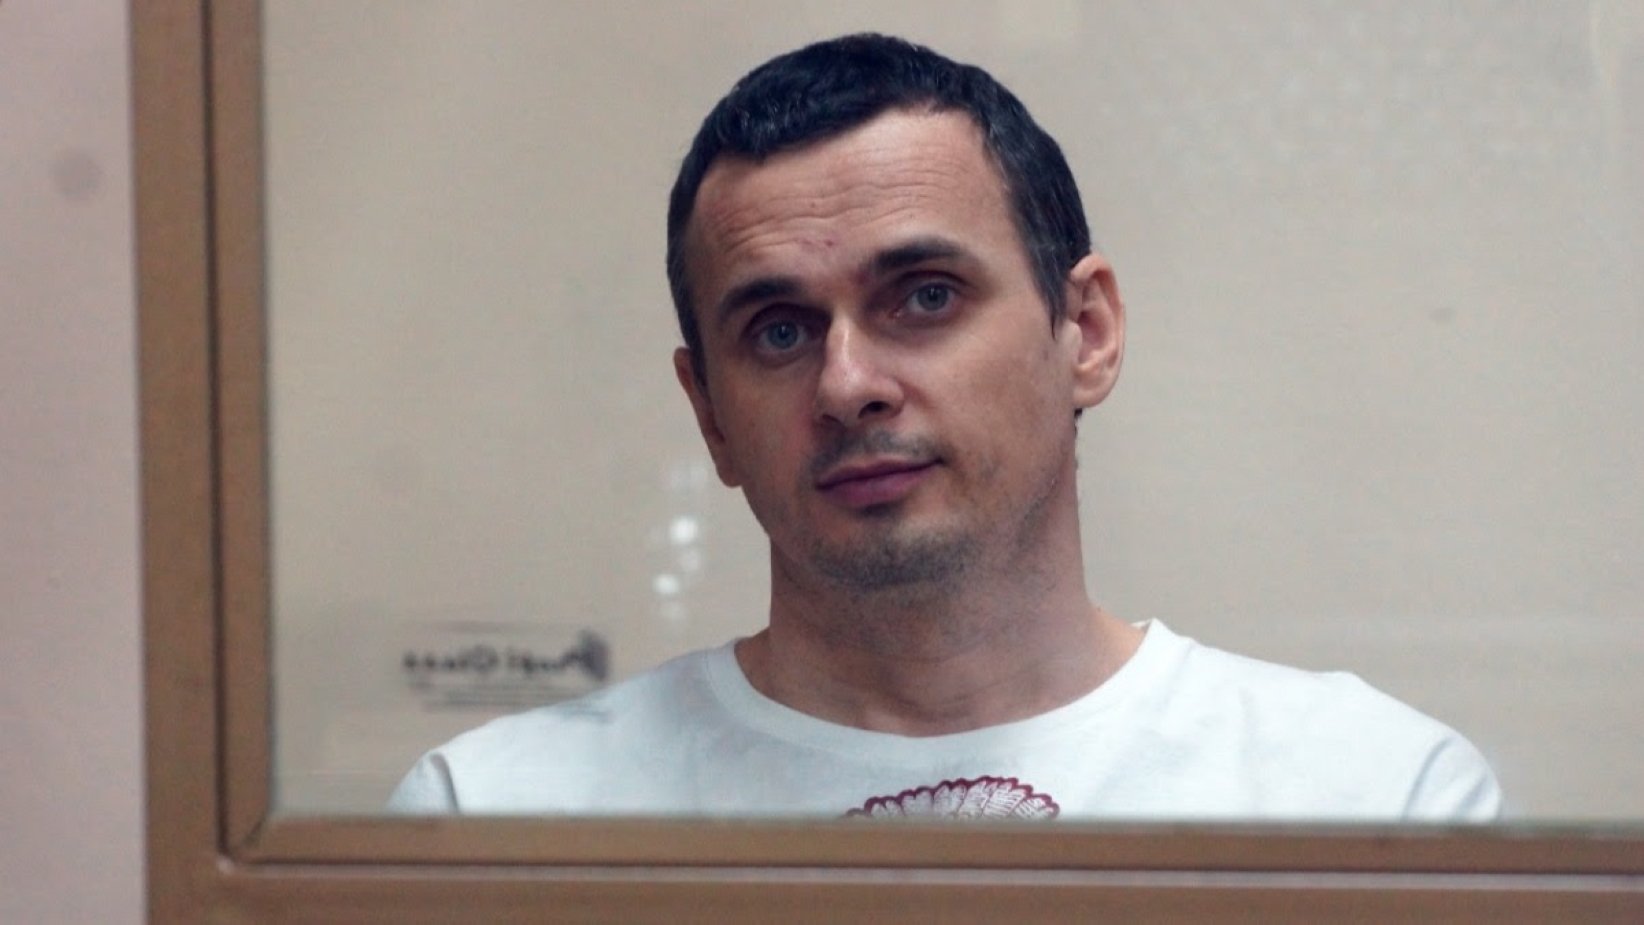 Oleg Sentsov: "Fui víctima de una acusación fabricada de terrorismo"